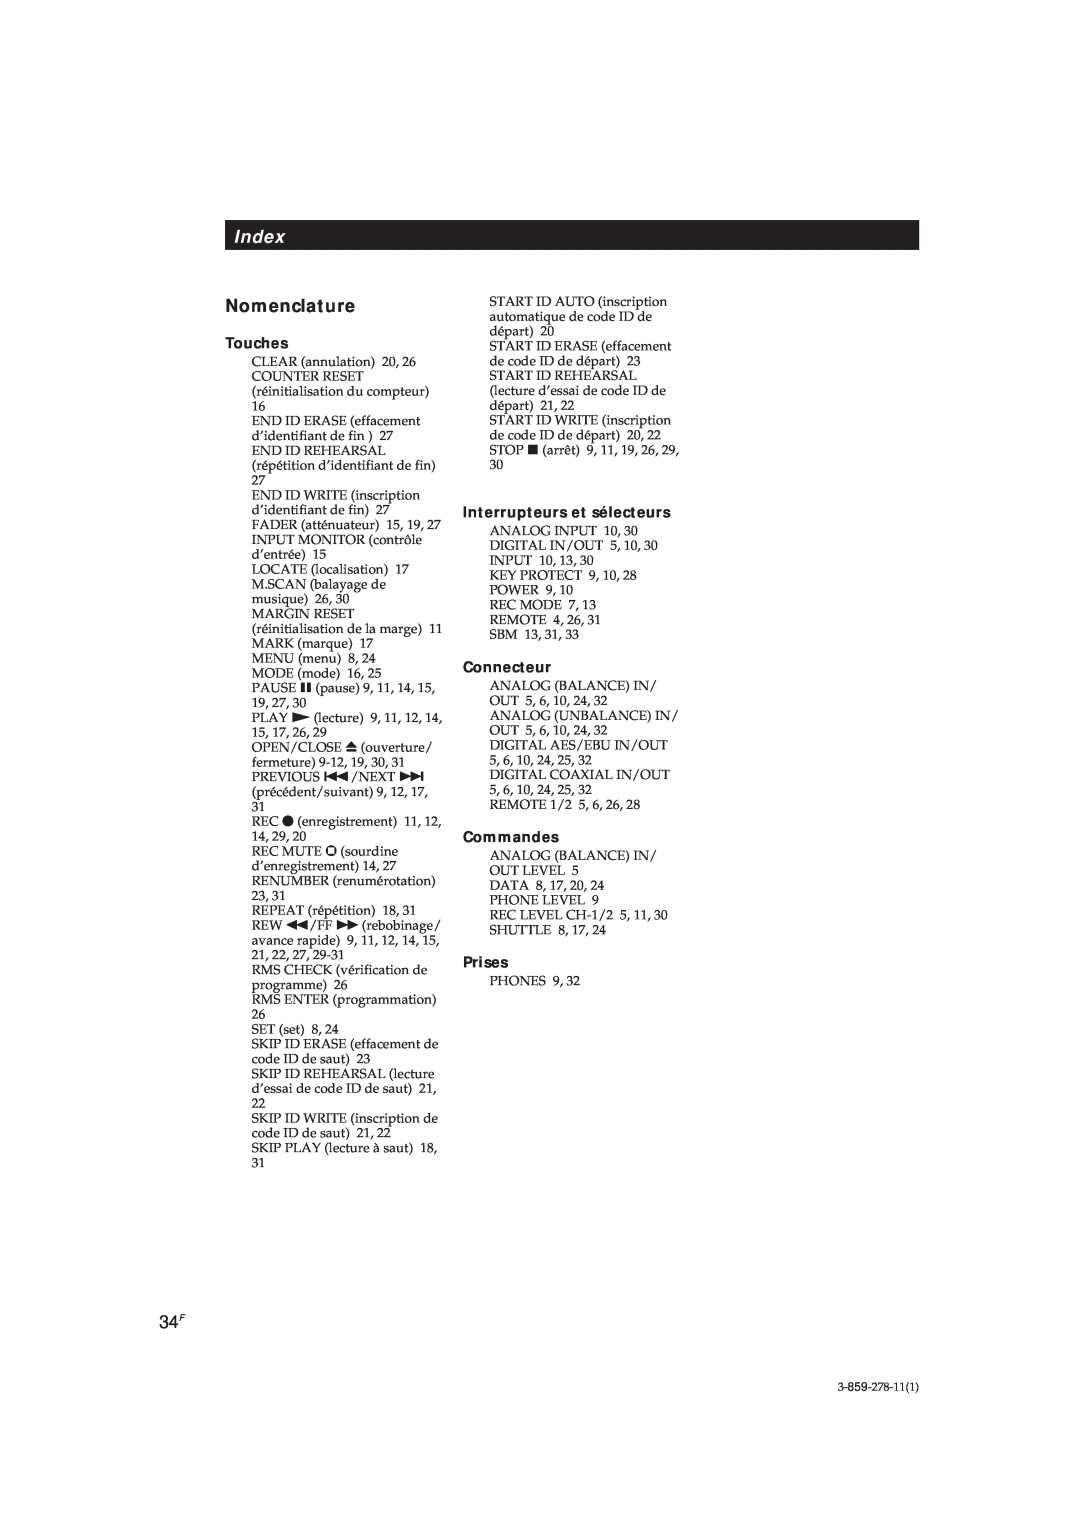 Sony PCM-R500, PCM-R700 manual Index, Nomenclature 